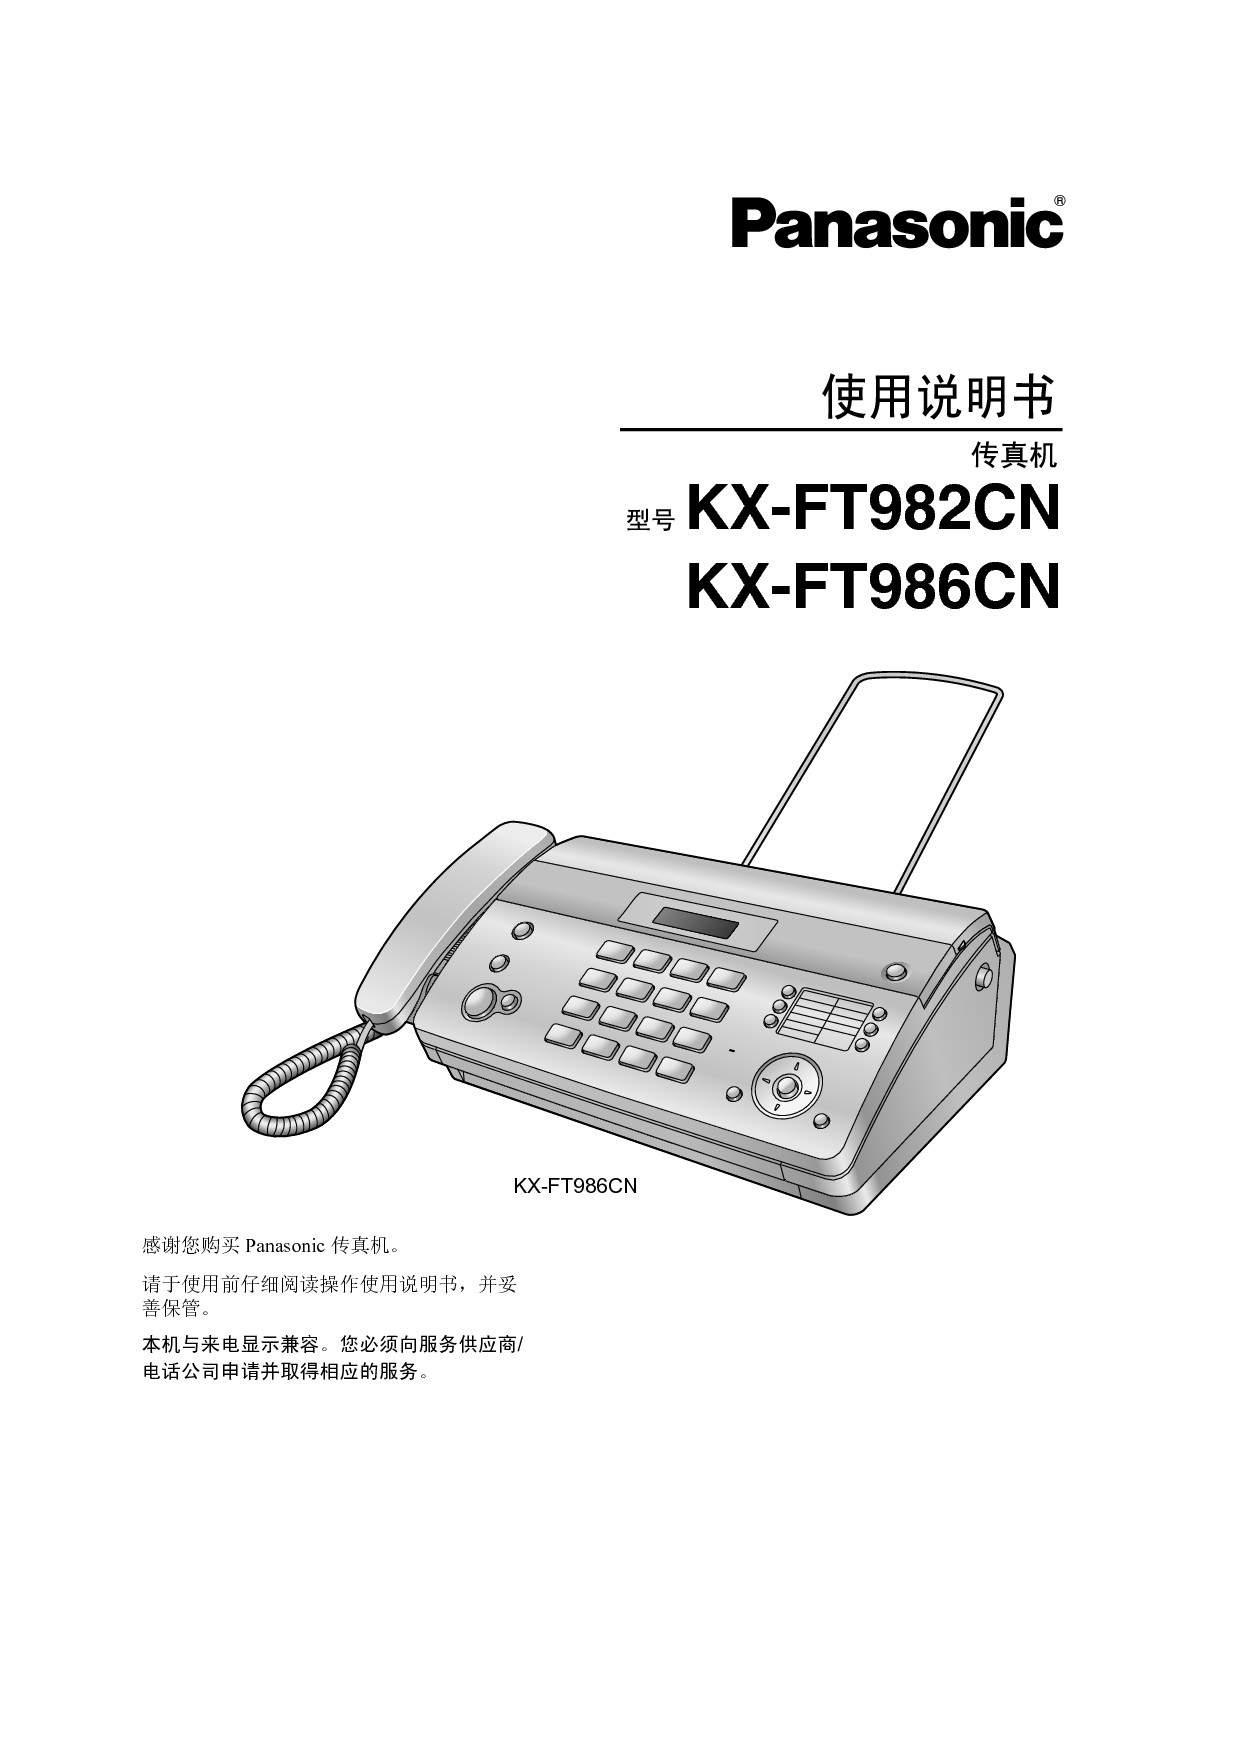 松下 Panasonic KX-FT982CN 说明书 封面